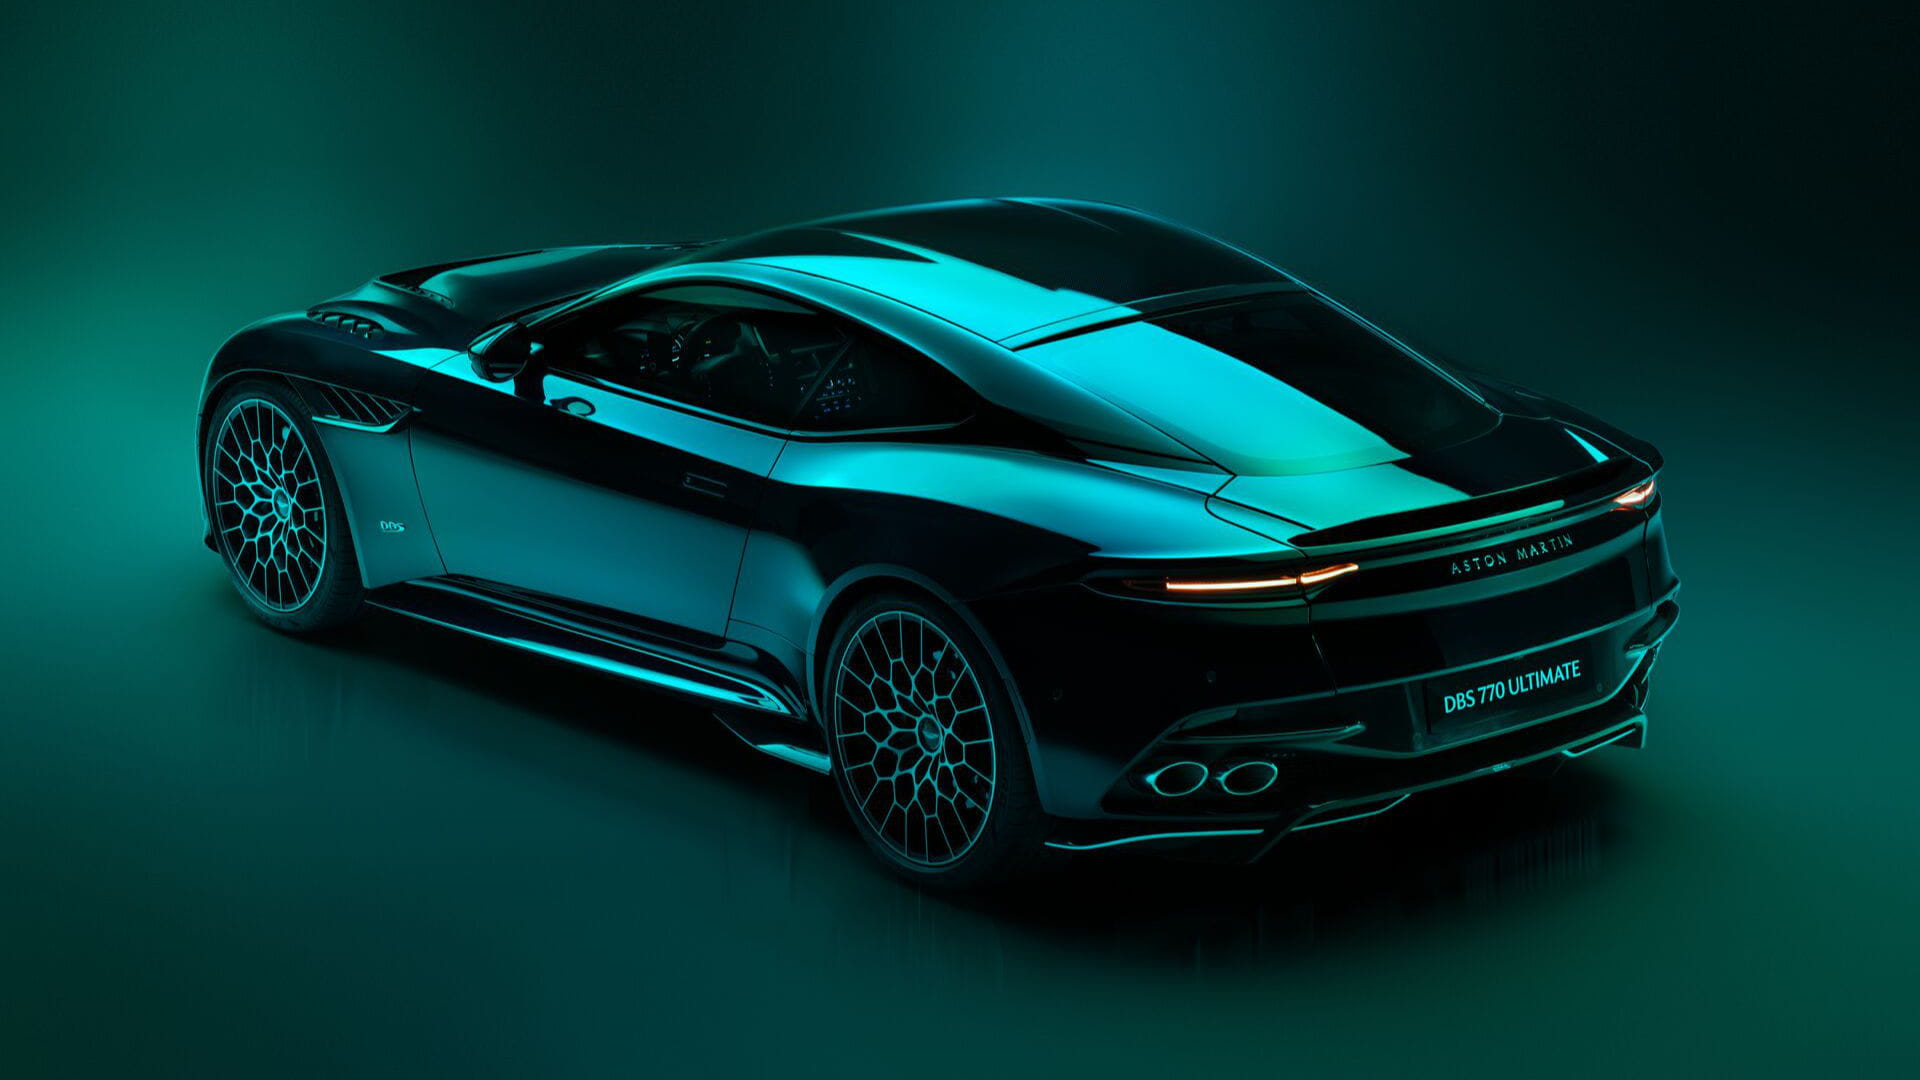 Aston Martin Valhalla hybrid supercar with 1000 bhp teased once again